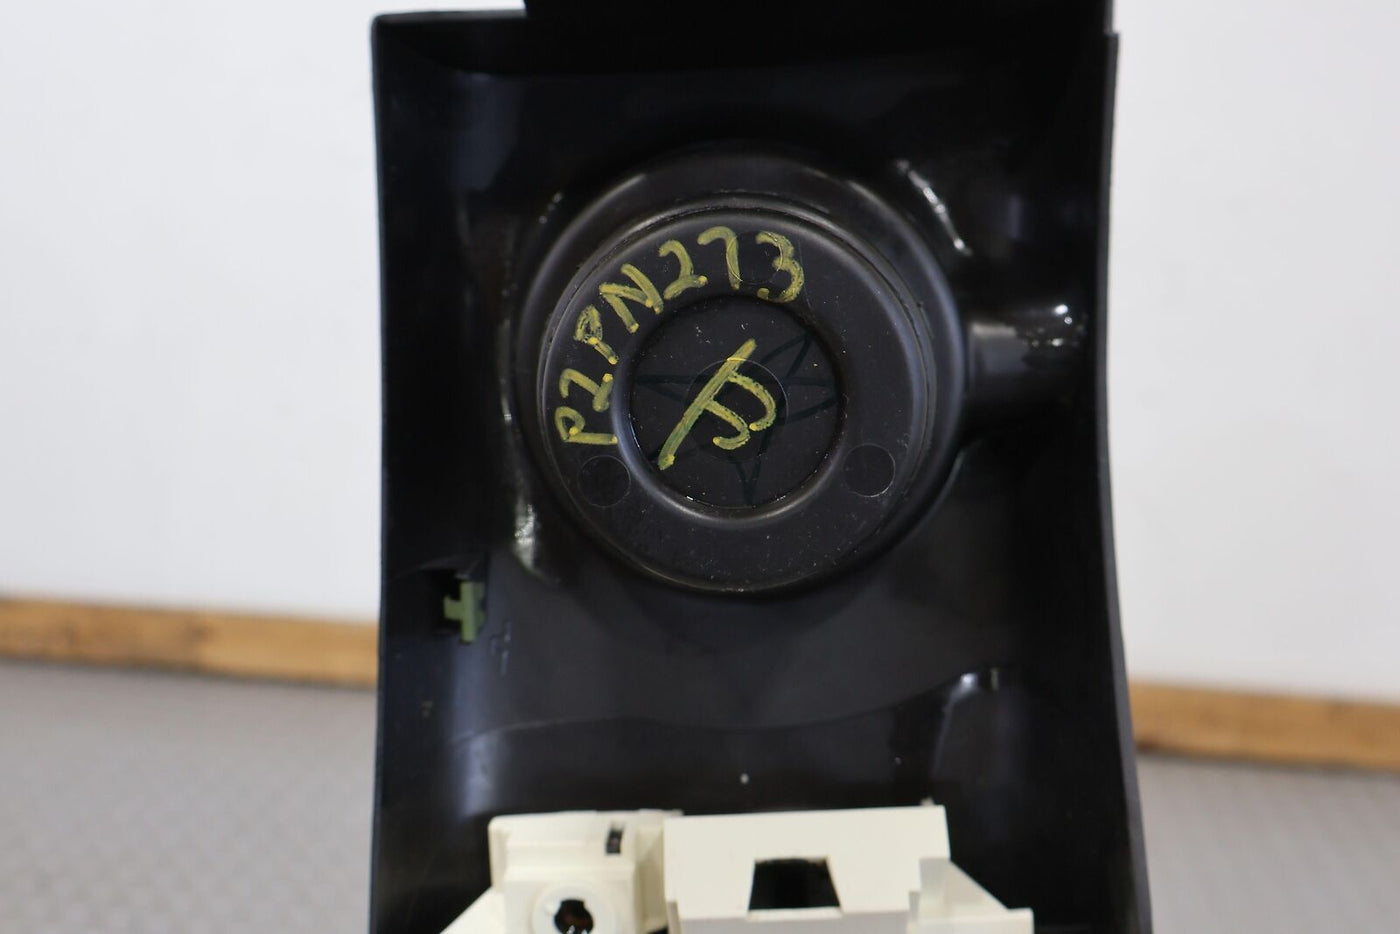 00-02 Pontiac Firebird Upper Center Console Shifter Trim (Black 19i) Automatic